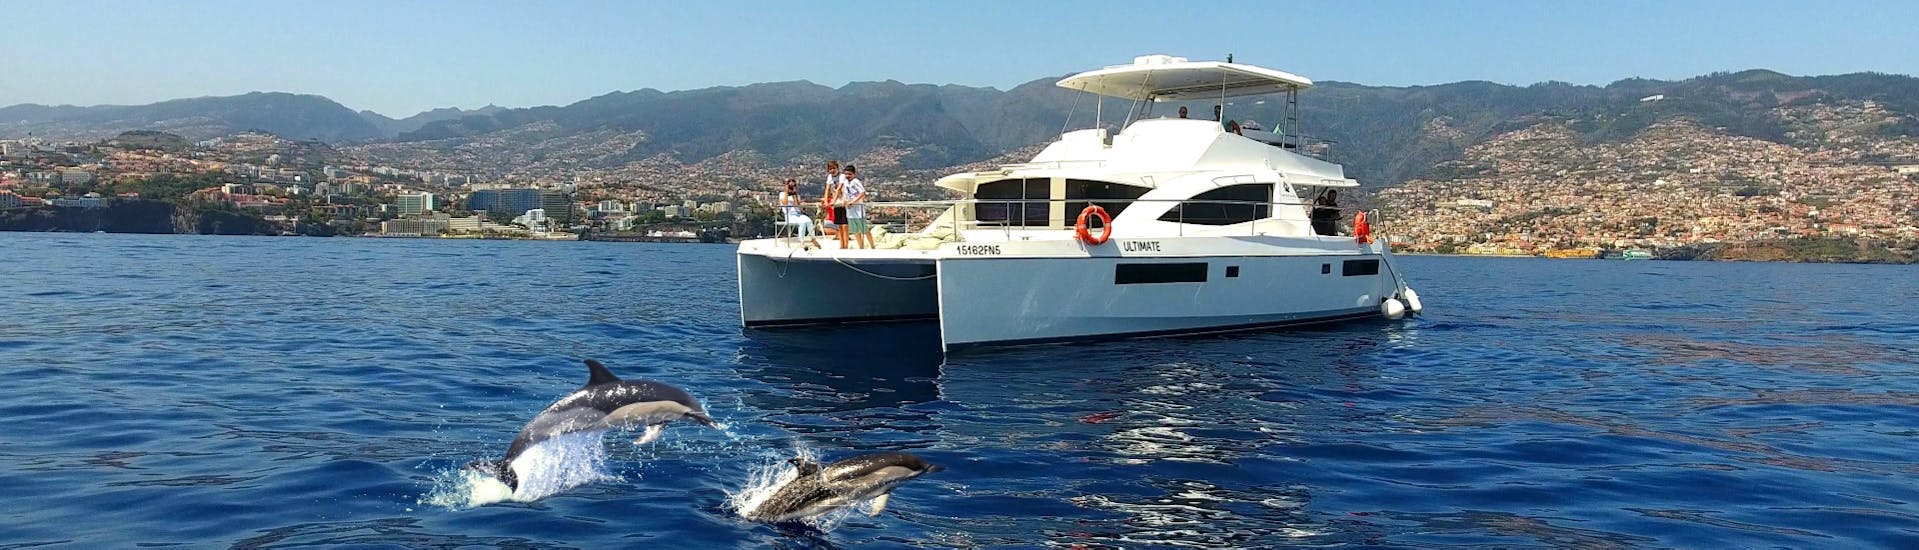 Paseo en catamarán privado de Funchal con baño en el mar & avistamiento de fauna.